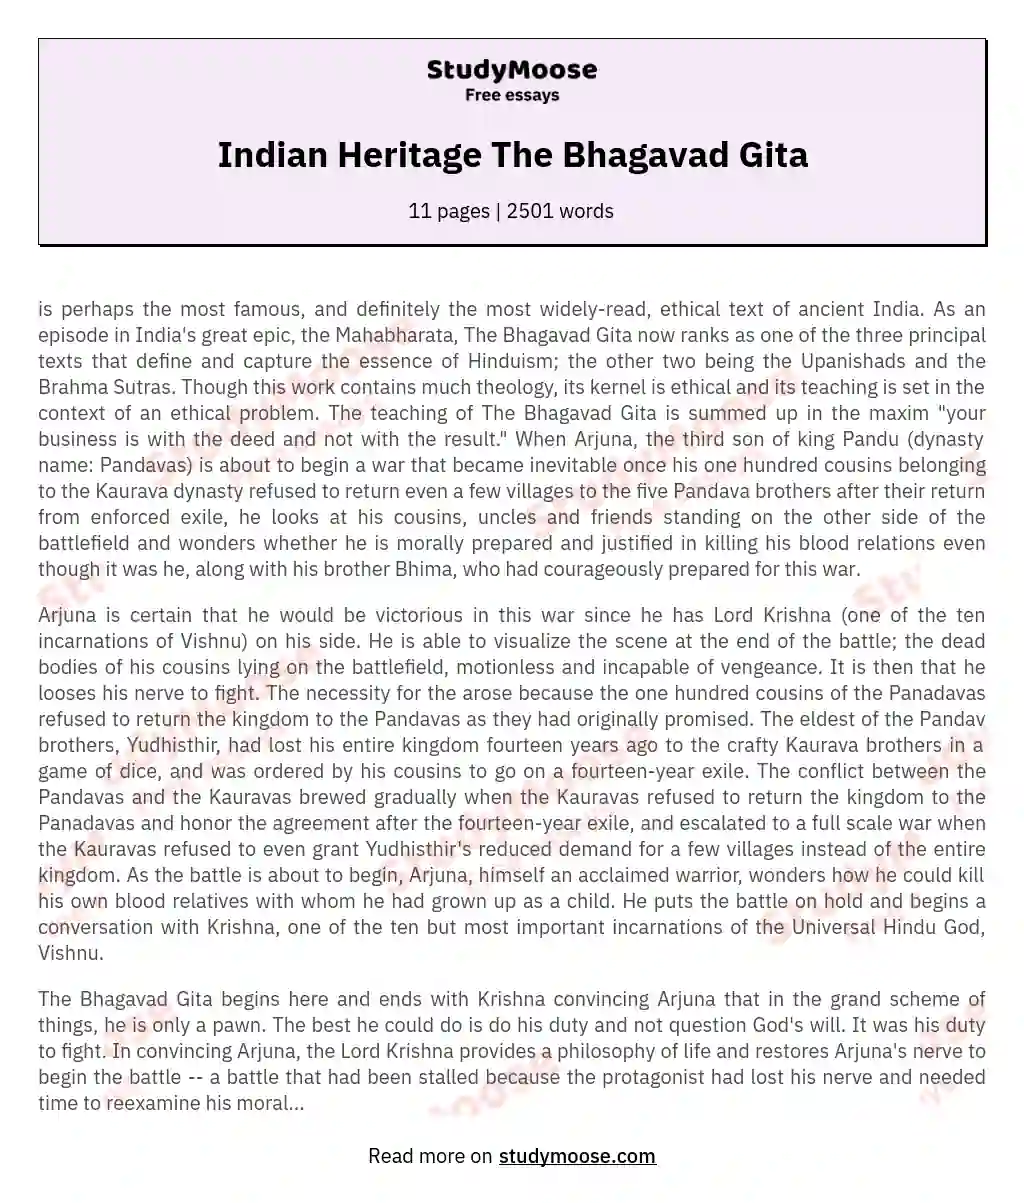 Indian Heritage The Bhagavad Gita essay